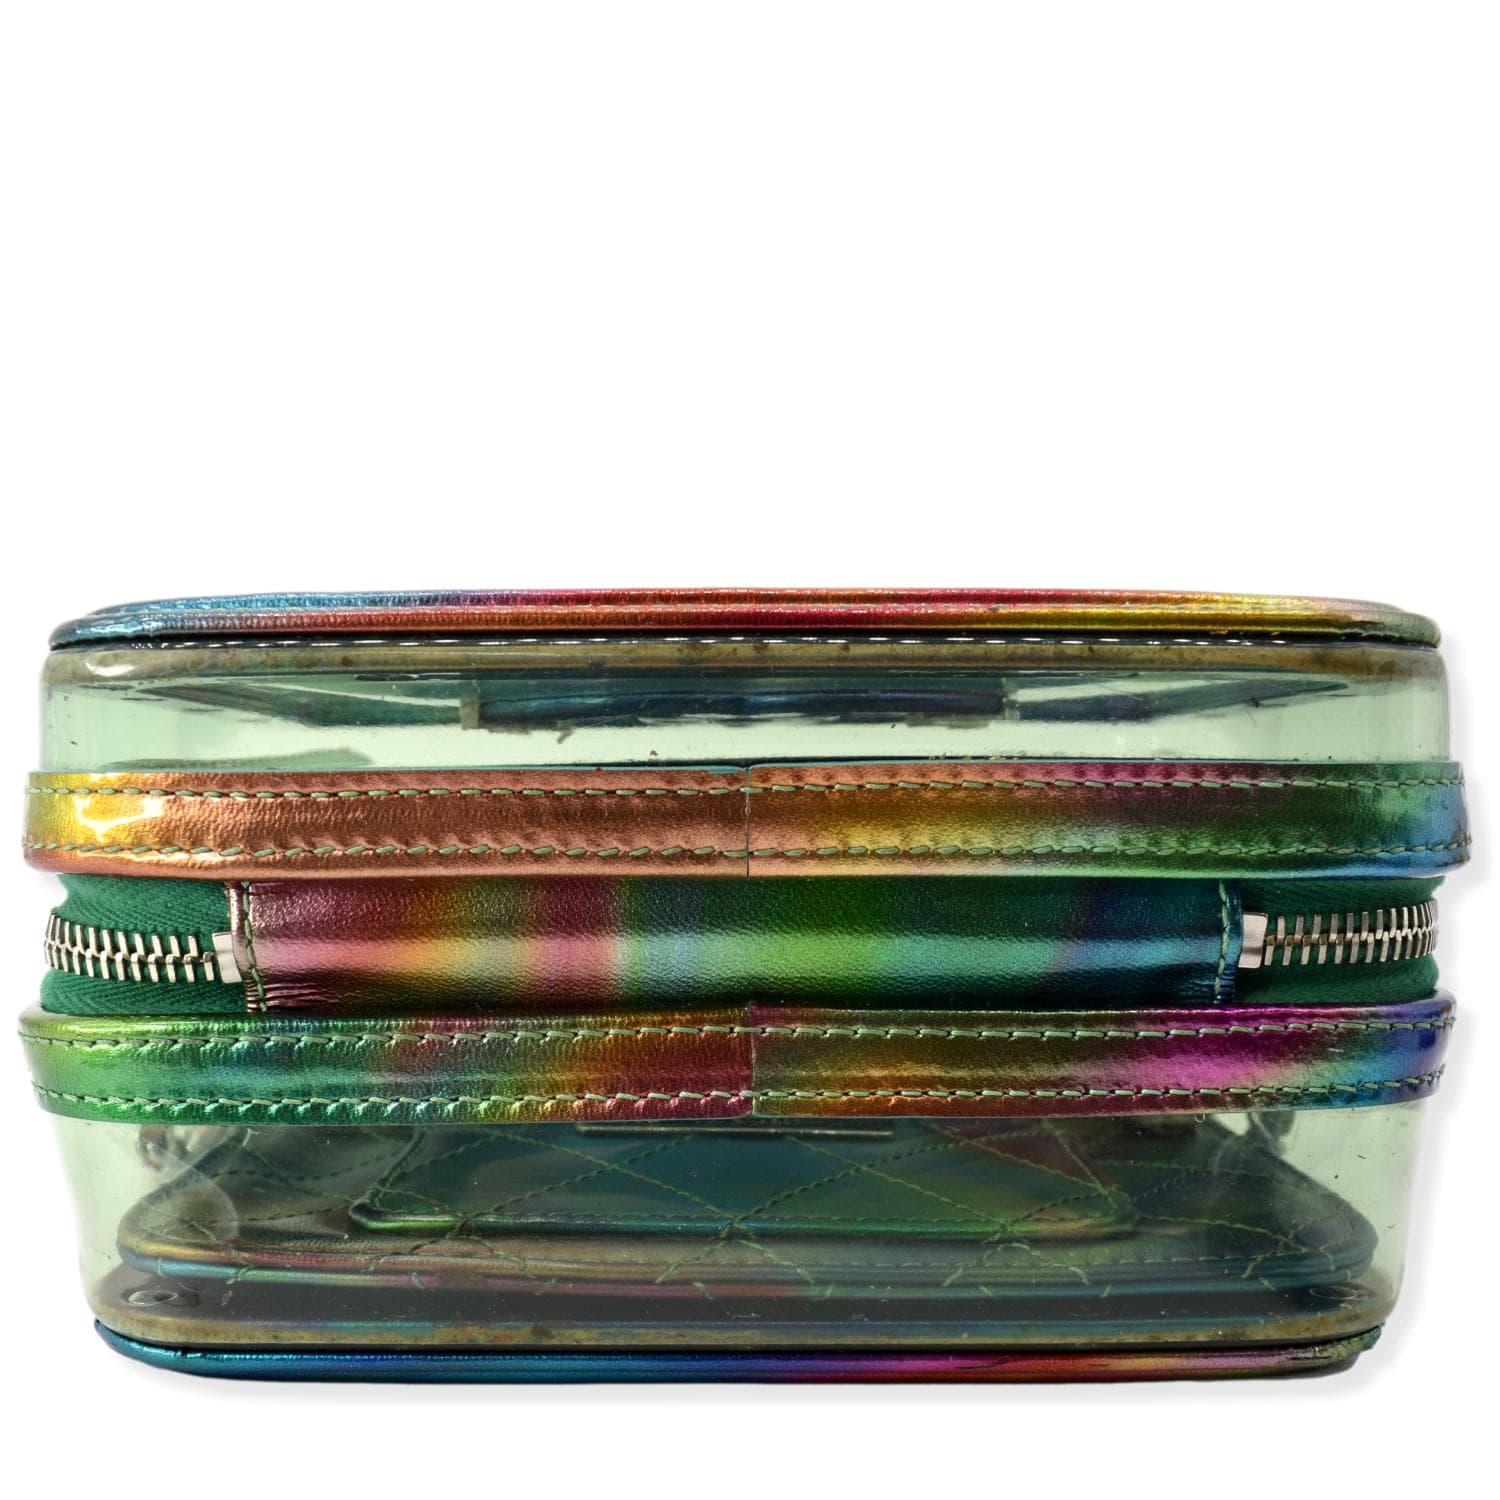 chanel iridescent vanity case bag